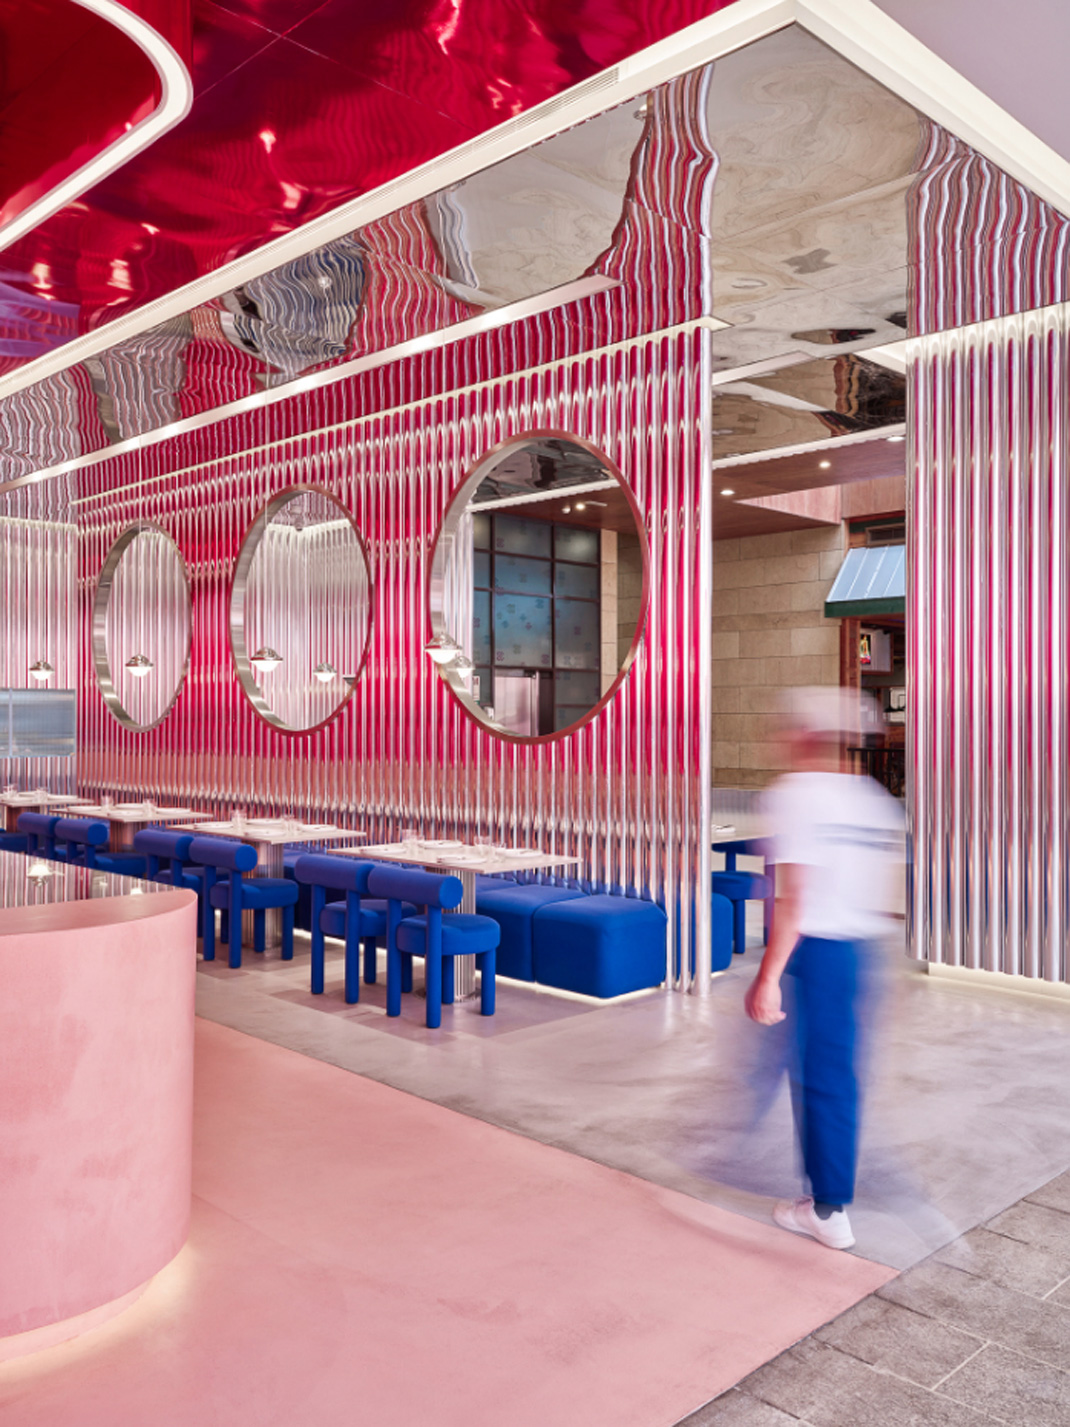 红色和蓝色调甜品店设计 科威特 甜品店 蓝色 红色 波浪板 logo设计 vi设计 空间设计